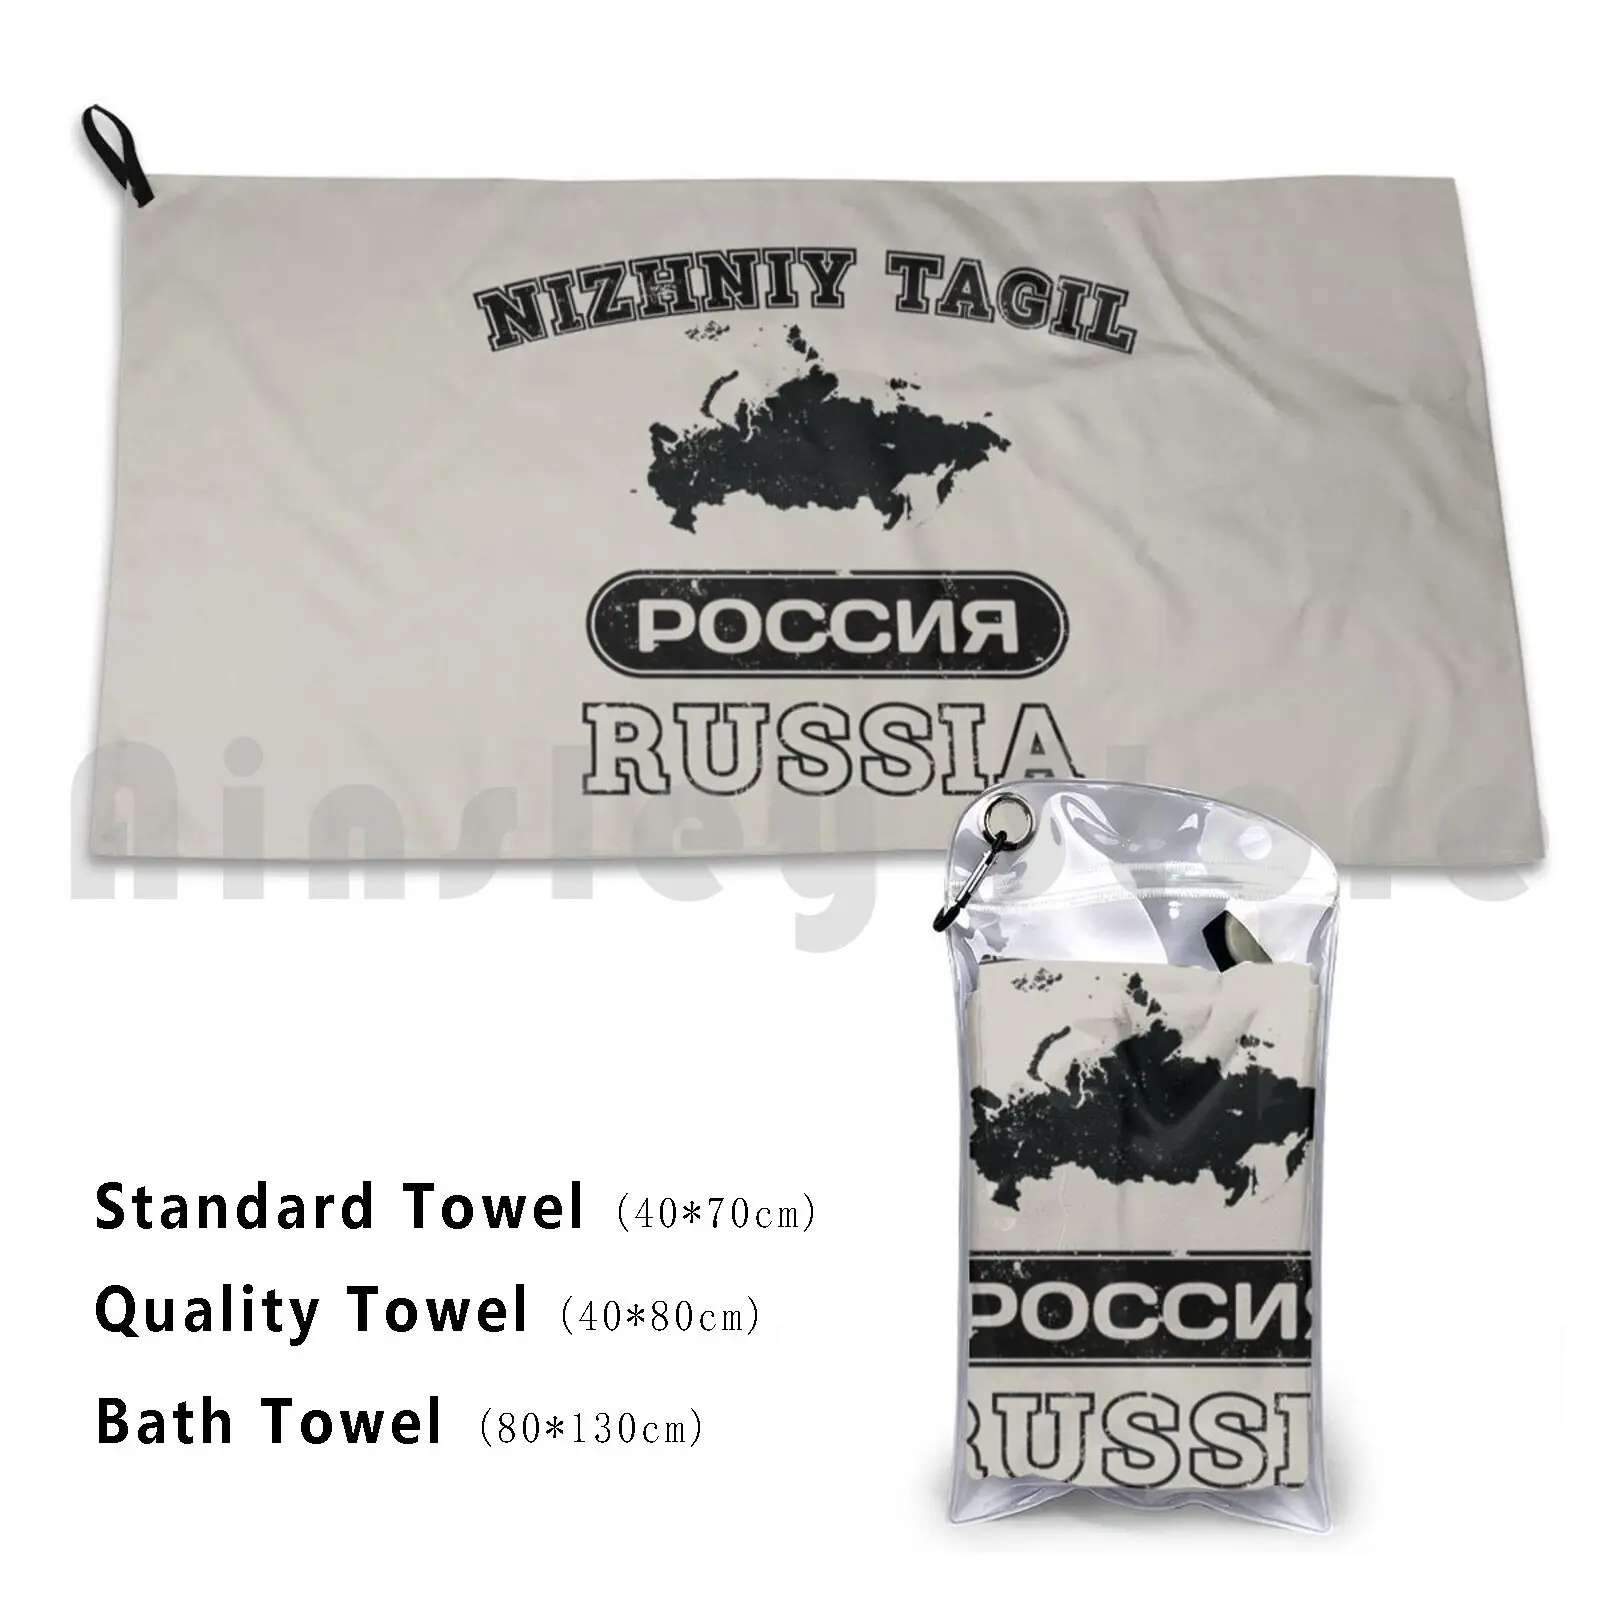 Nizhniy Tagil Российская собственность страны пользовательское полотенце банное